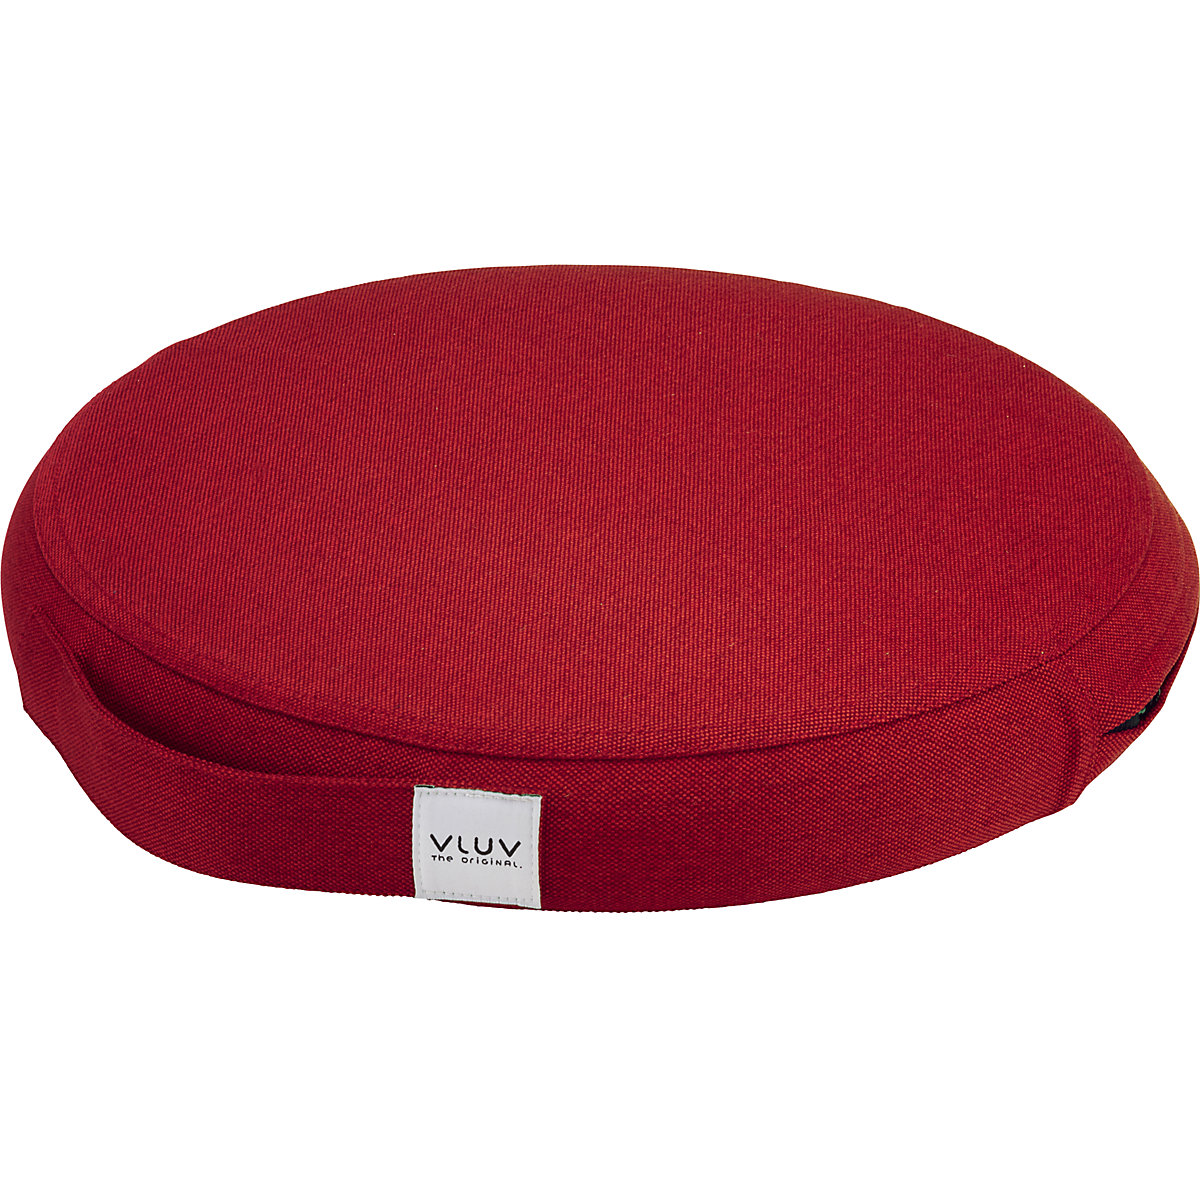 Coussin d'équilibre PIL&PED LEIV – VLUV, avec habillage tissu, Ø 400 mm, rouge rubis-10